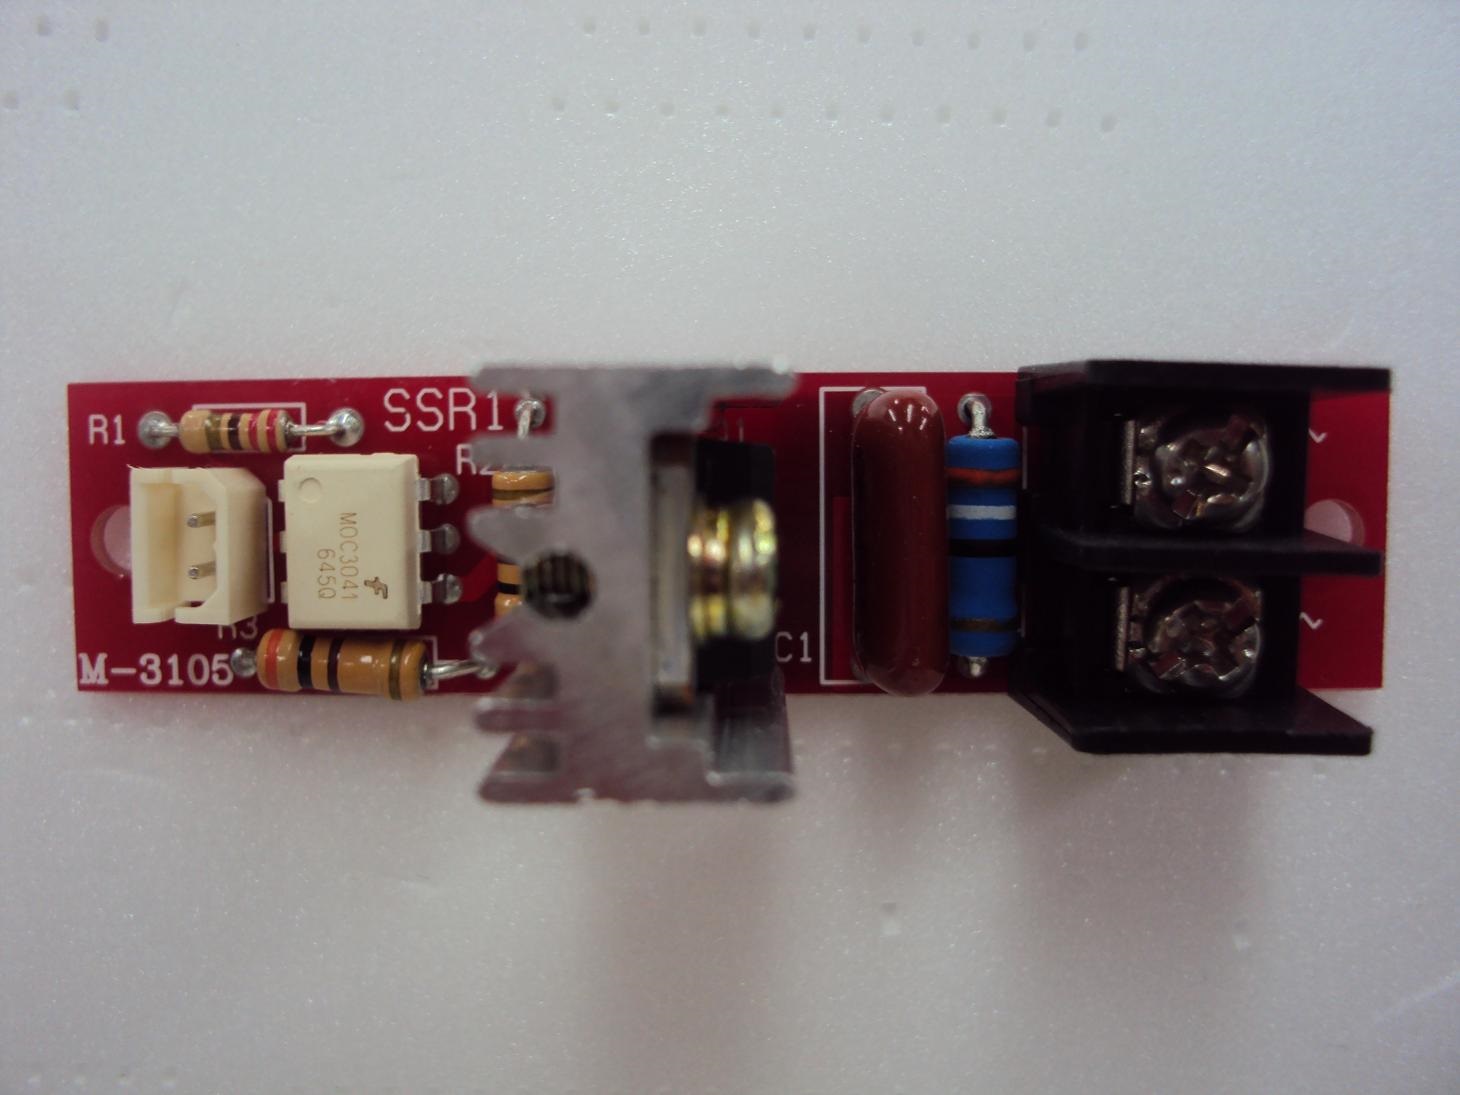  모듈 M-3105 / SSR1(Solid State Relay) 무접점 릴레이  / 인투피온